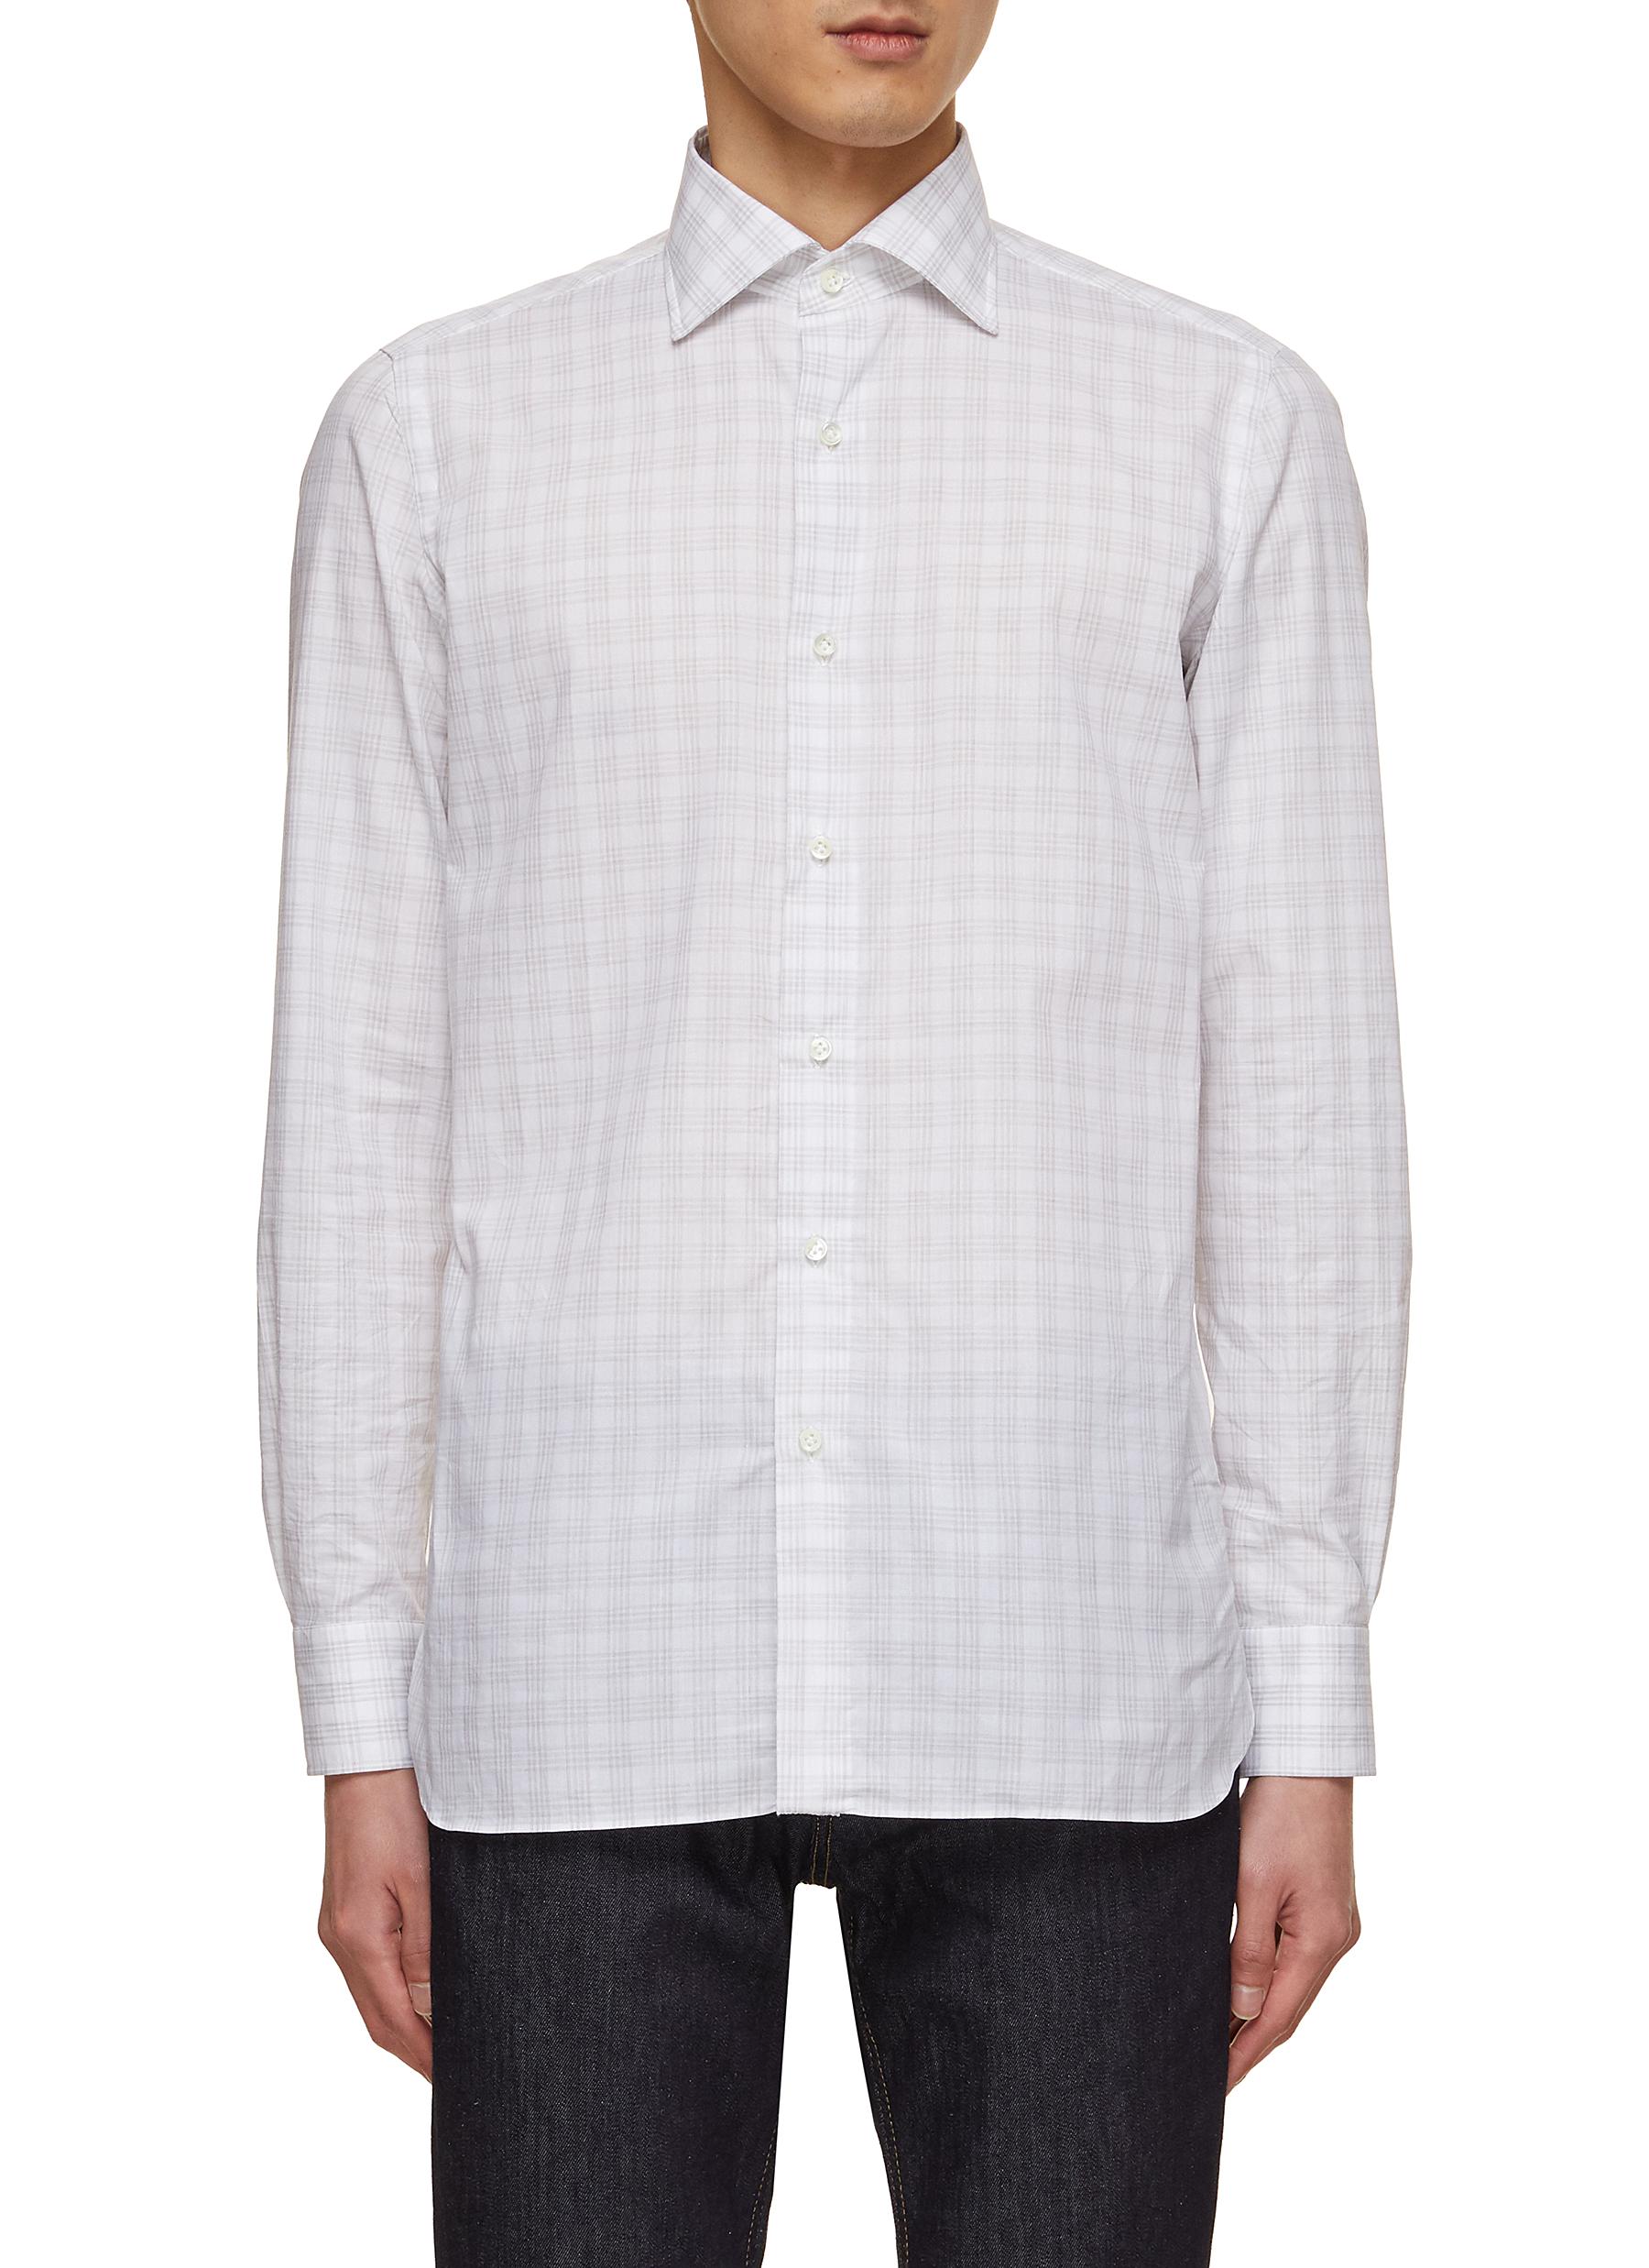 LUIGI BORRELLI - NAPOLI Spread Collar Check Cotton Shirt